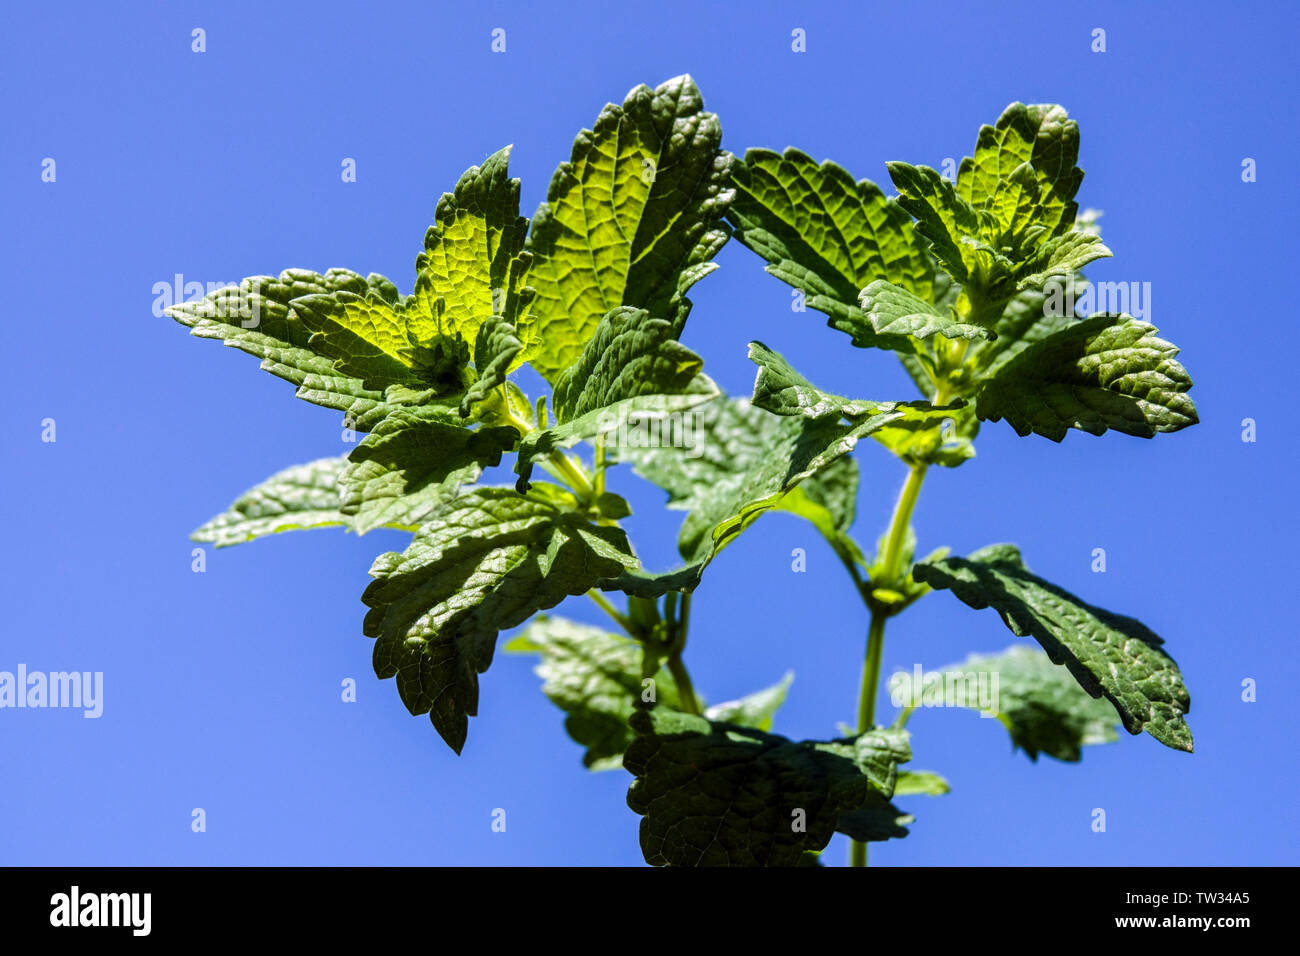 Melissa officinalis, Lemon balm plant, Mint against a blue sky Stock Photo